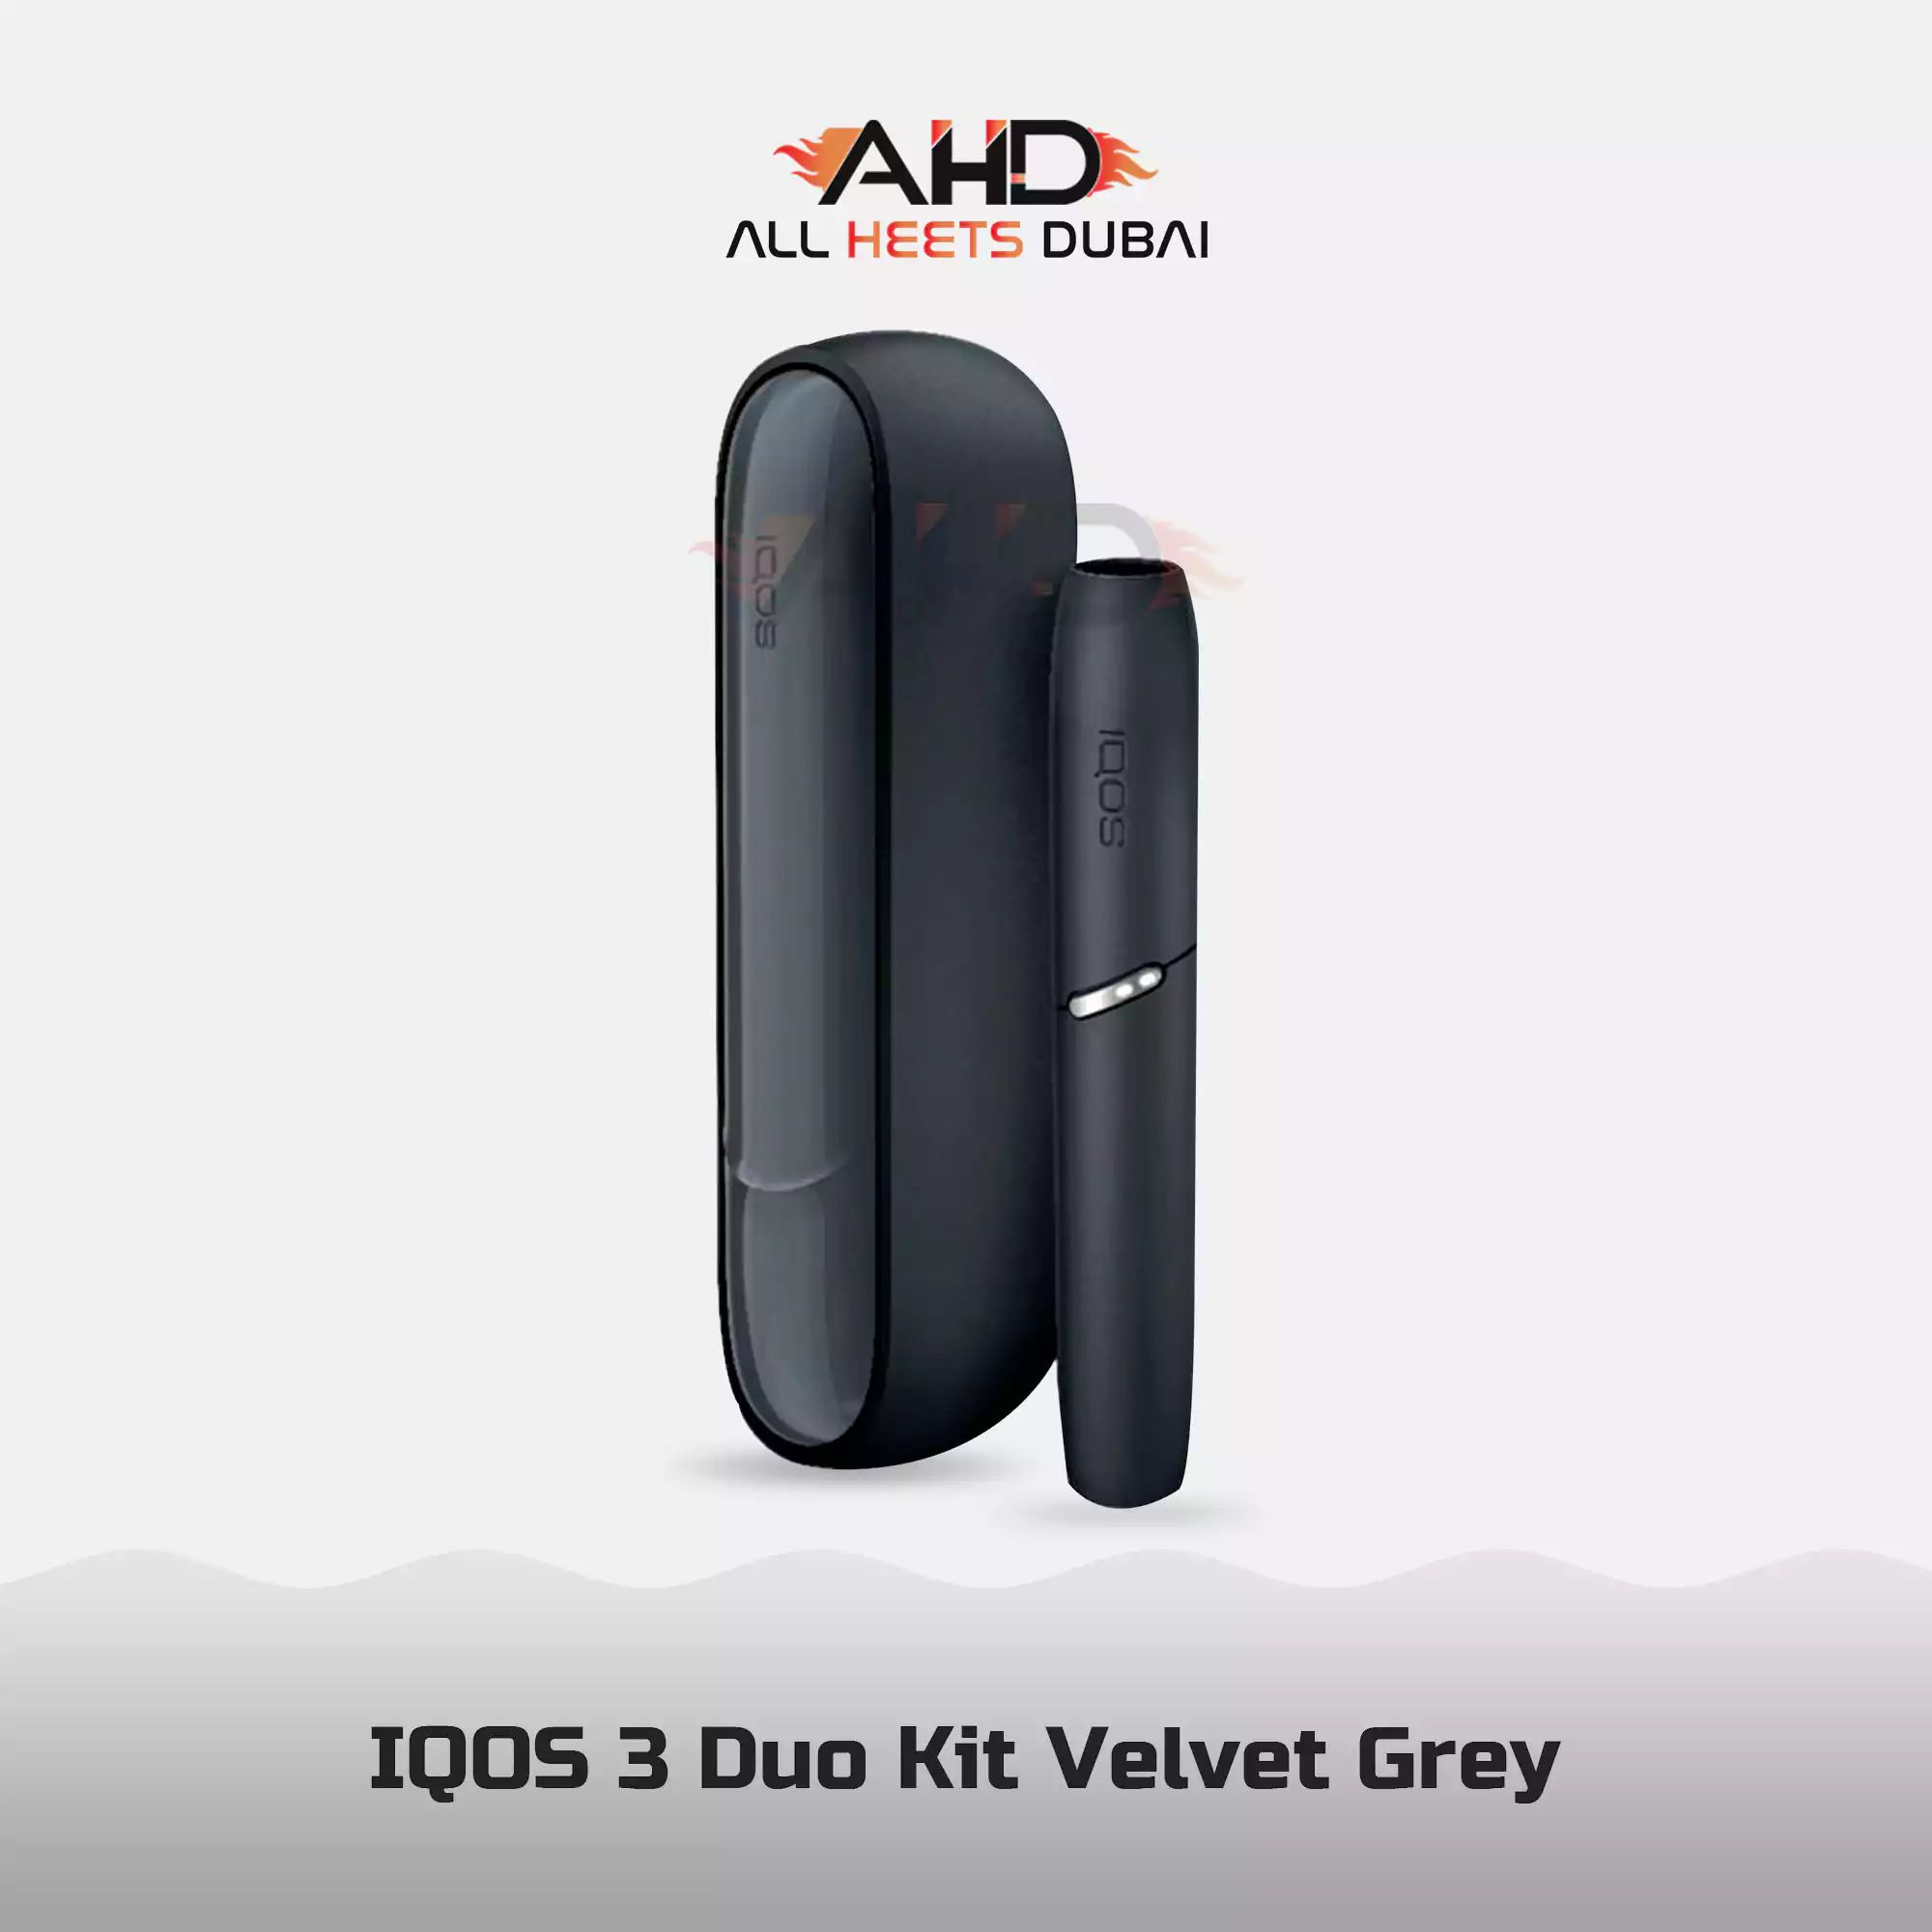 IQOS 3 Duo Kit Velvet Grey Dubai UAE